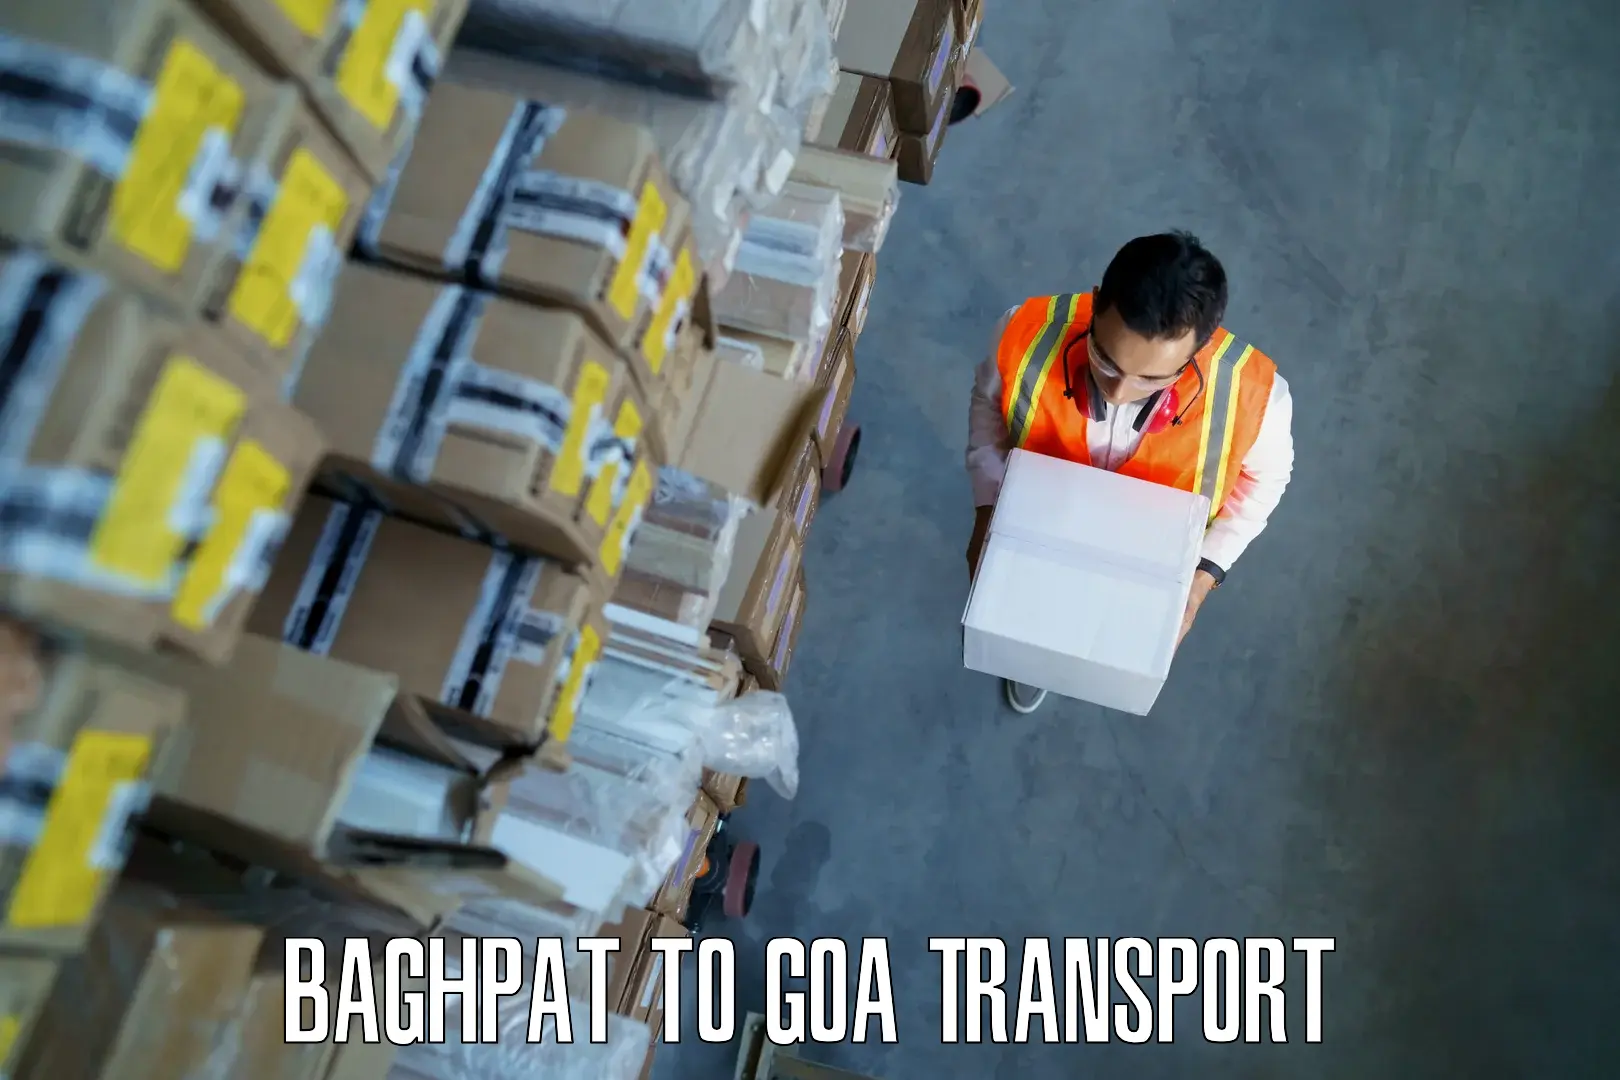 Parcel transport services Baghpat to Ponda